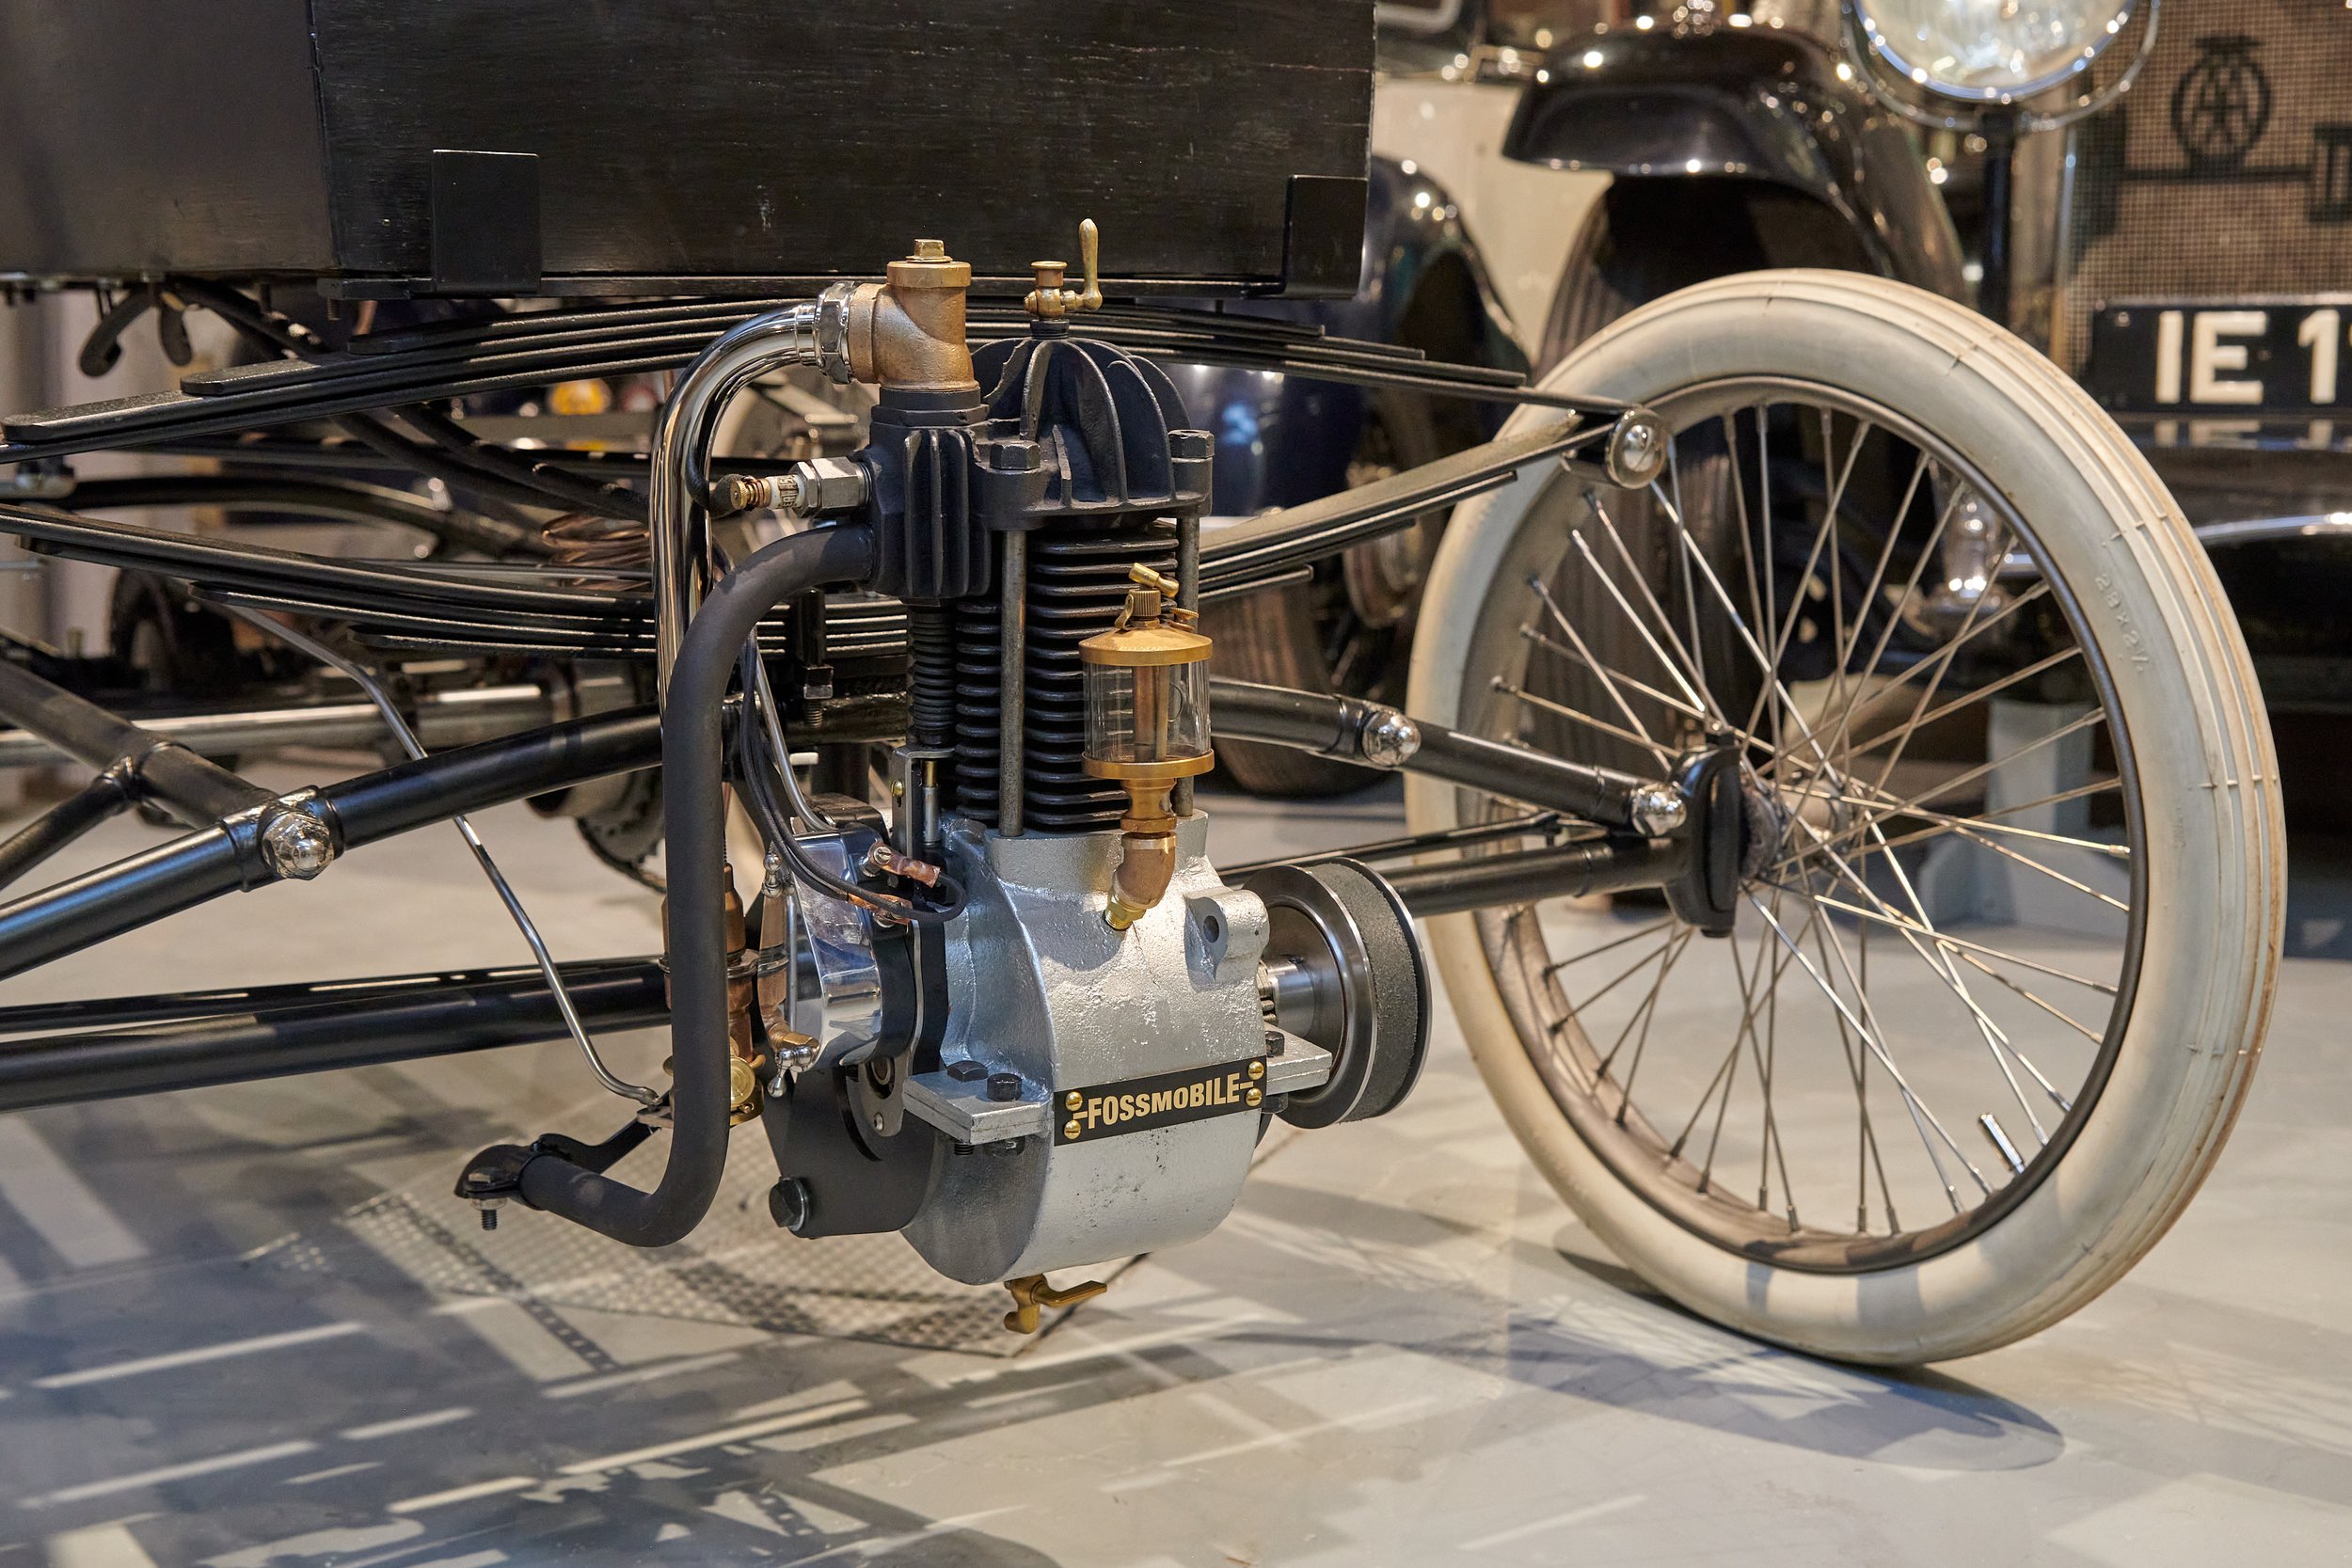  Le moteur monocylindre de la réplique, qui était à l'origine une copie d'époque d'un design De Dion. 